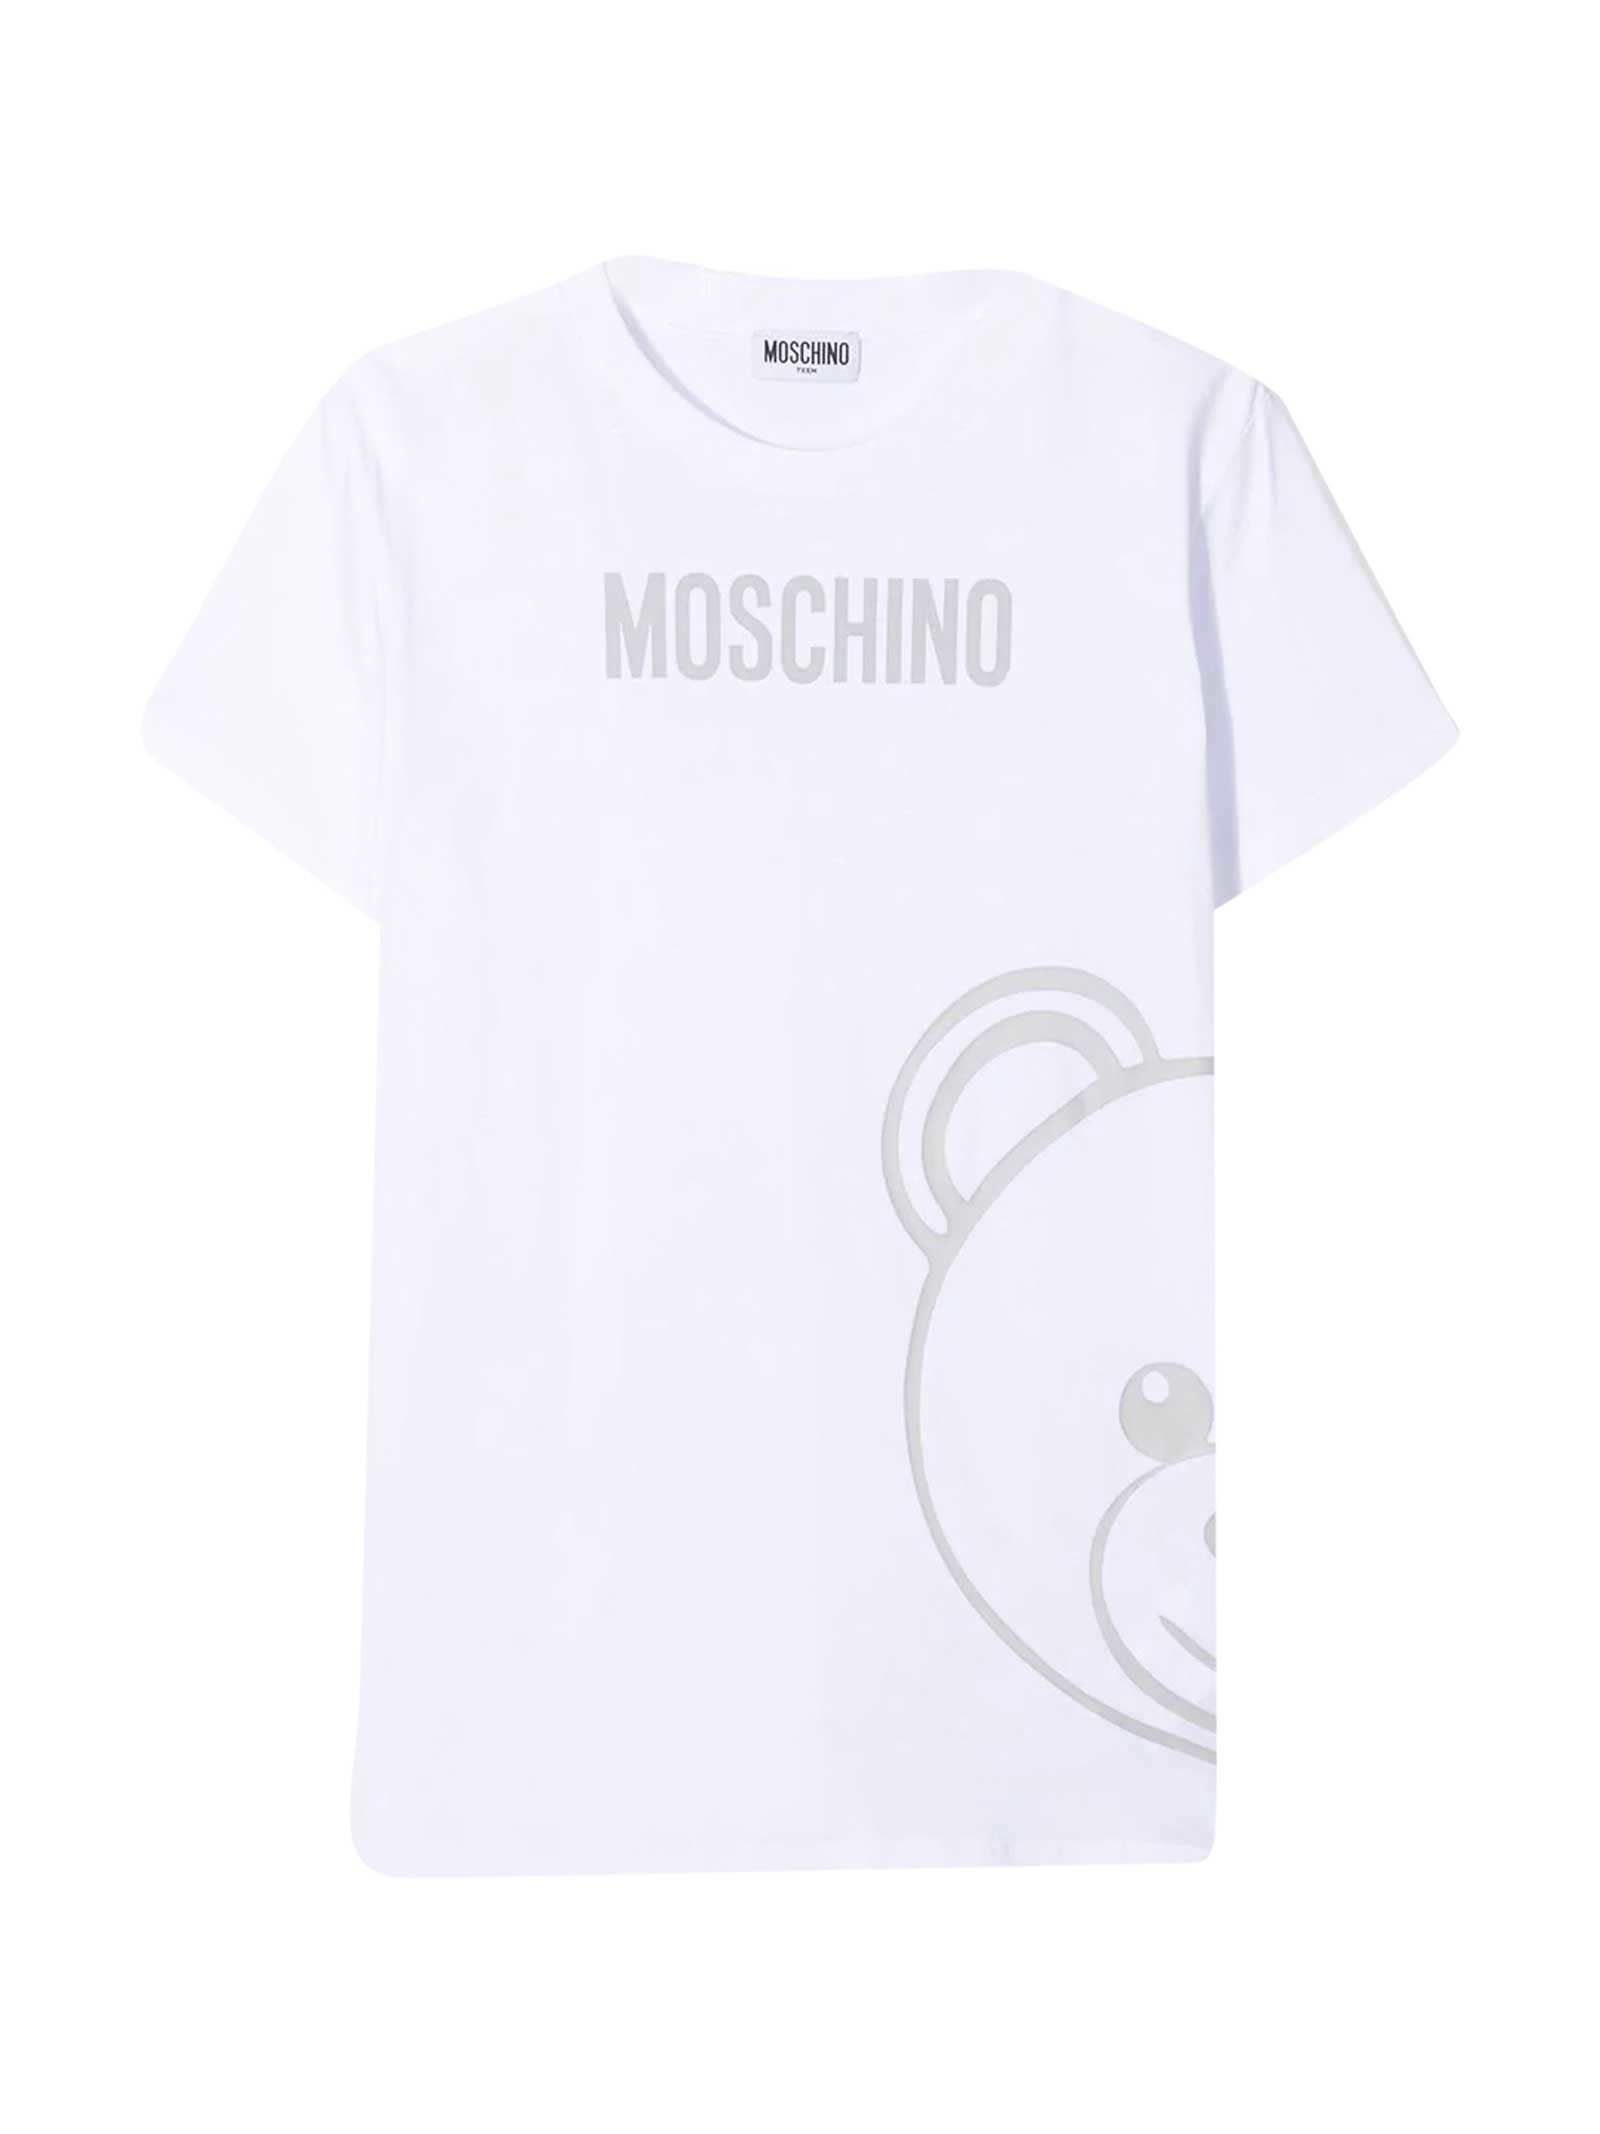 MOSCHINO WHITE T-SHIRT TEEN,11764025